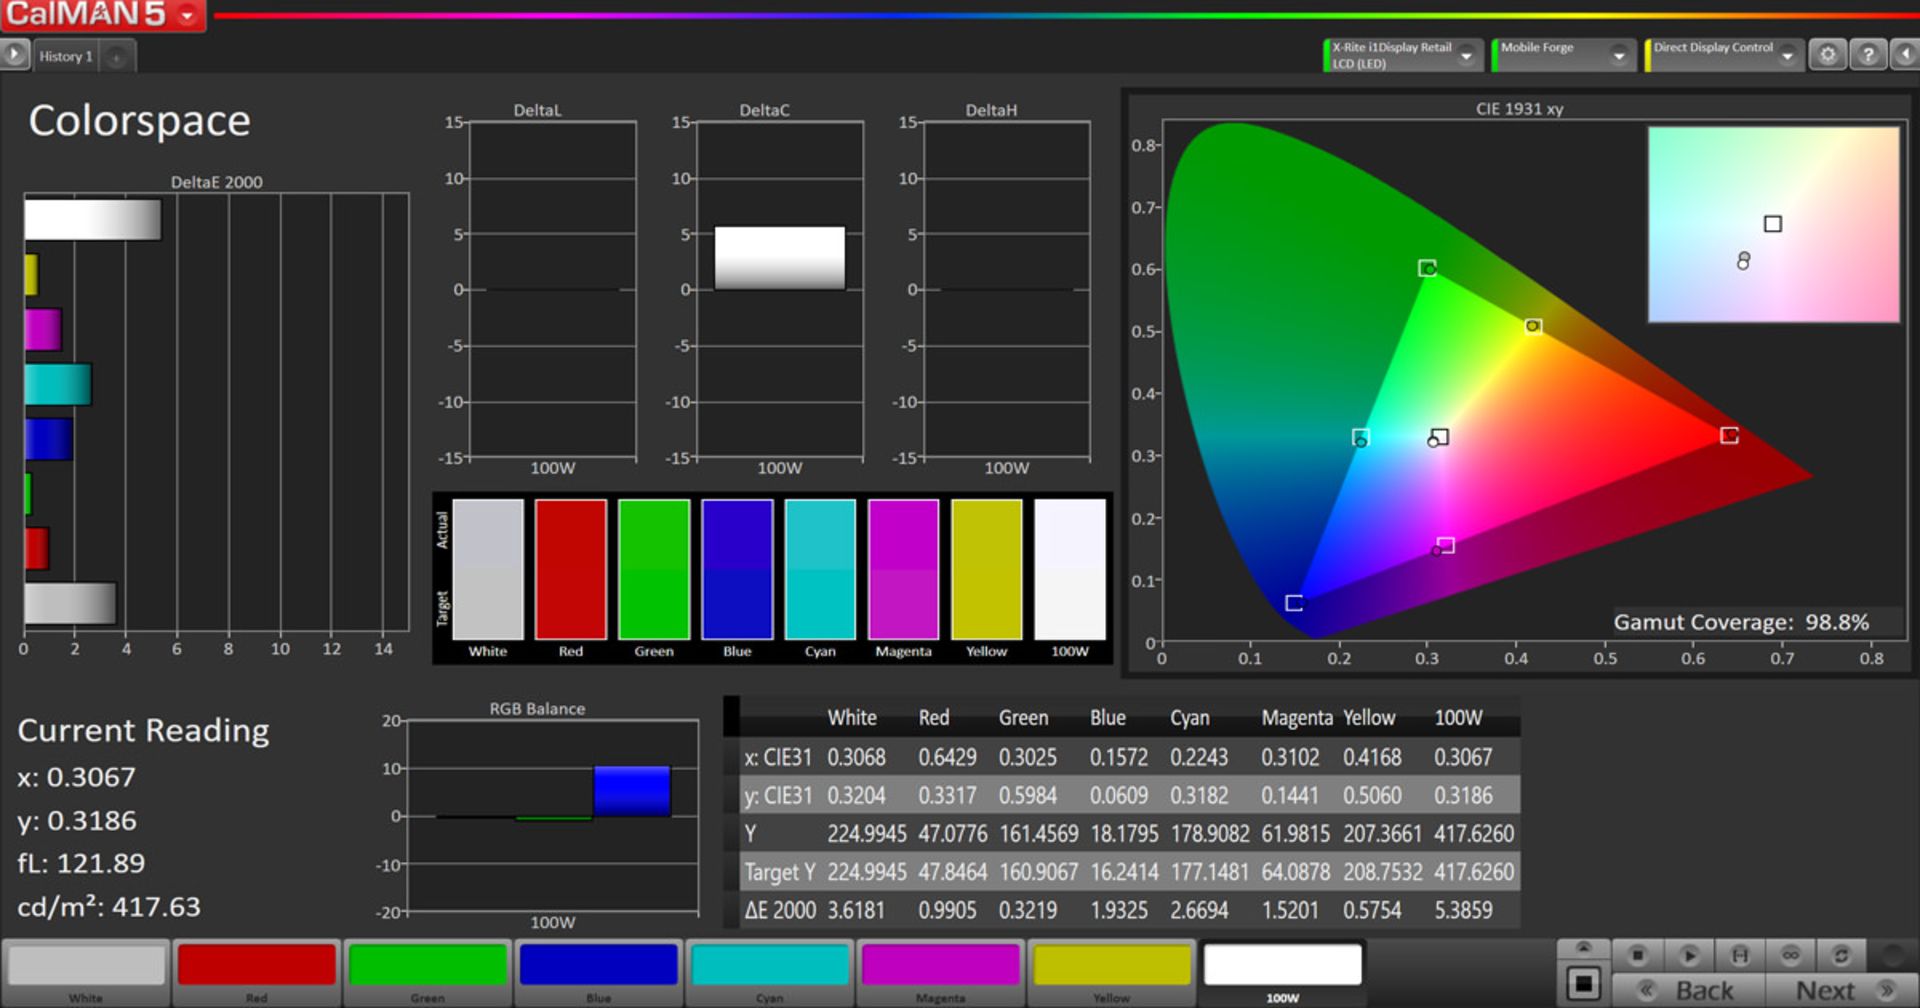 مرجع متخصصين ايران پوشش فضاي رنگي sRGB در حالت Normal - آنر ۹ ايكس